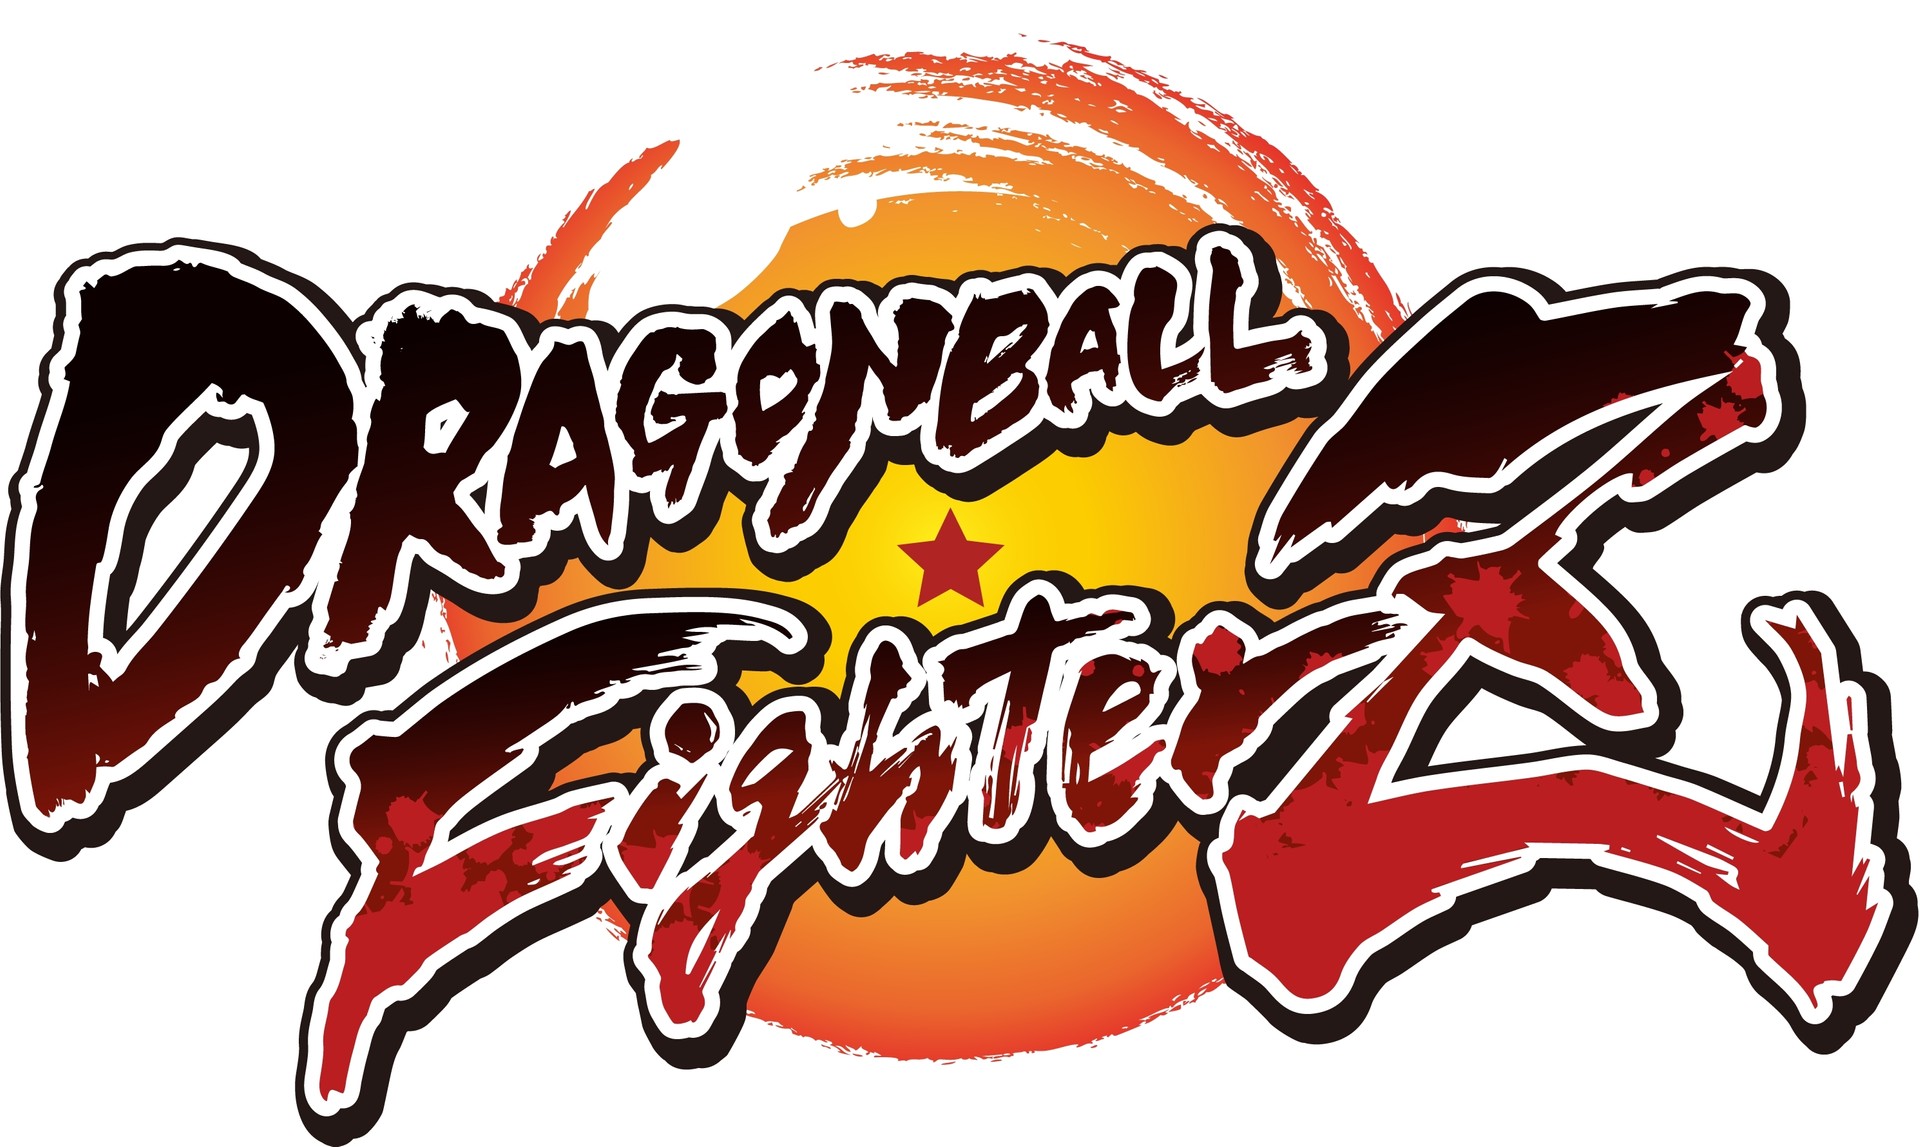 Dragon Ball Z: Microsoft disponibiliza a primeira temporada de graça 